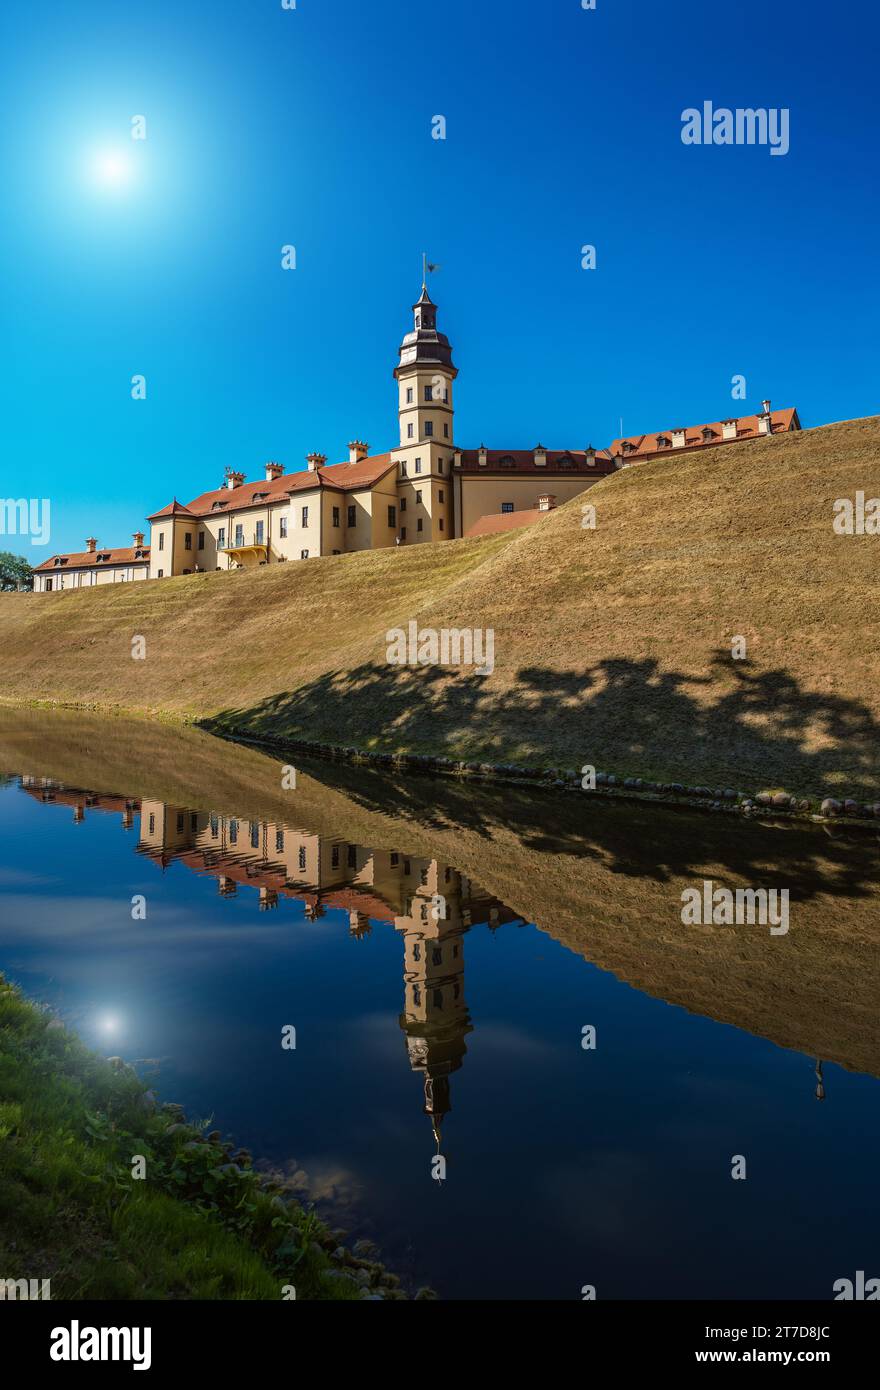 Le château de Nesvizh ou château de Niasvizh est un château résidentiel de la famille Radziwill à Nesvizh, en Biélorussie. Il est situé à une altitude de 183 mètres. Banque D'Images